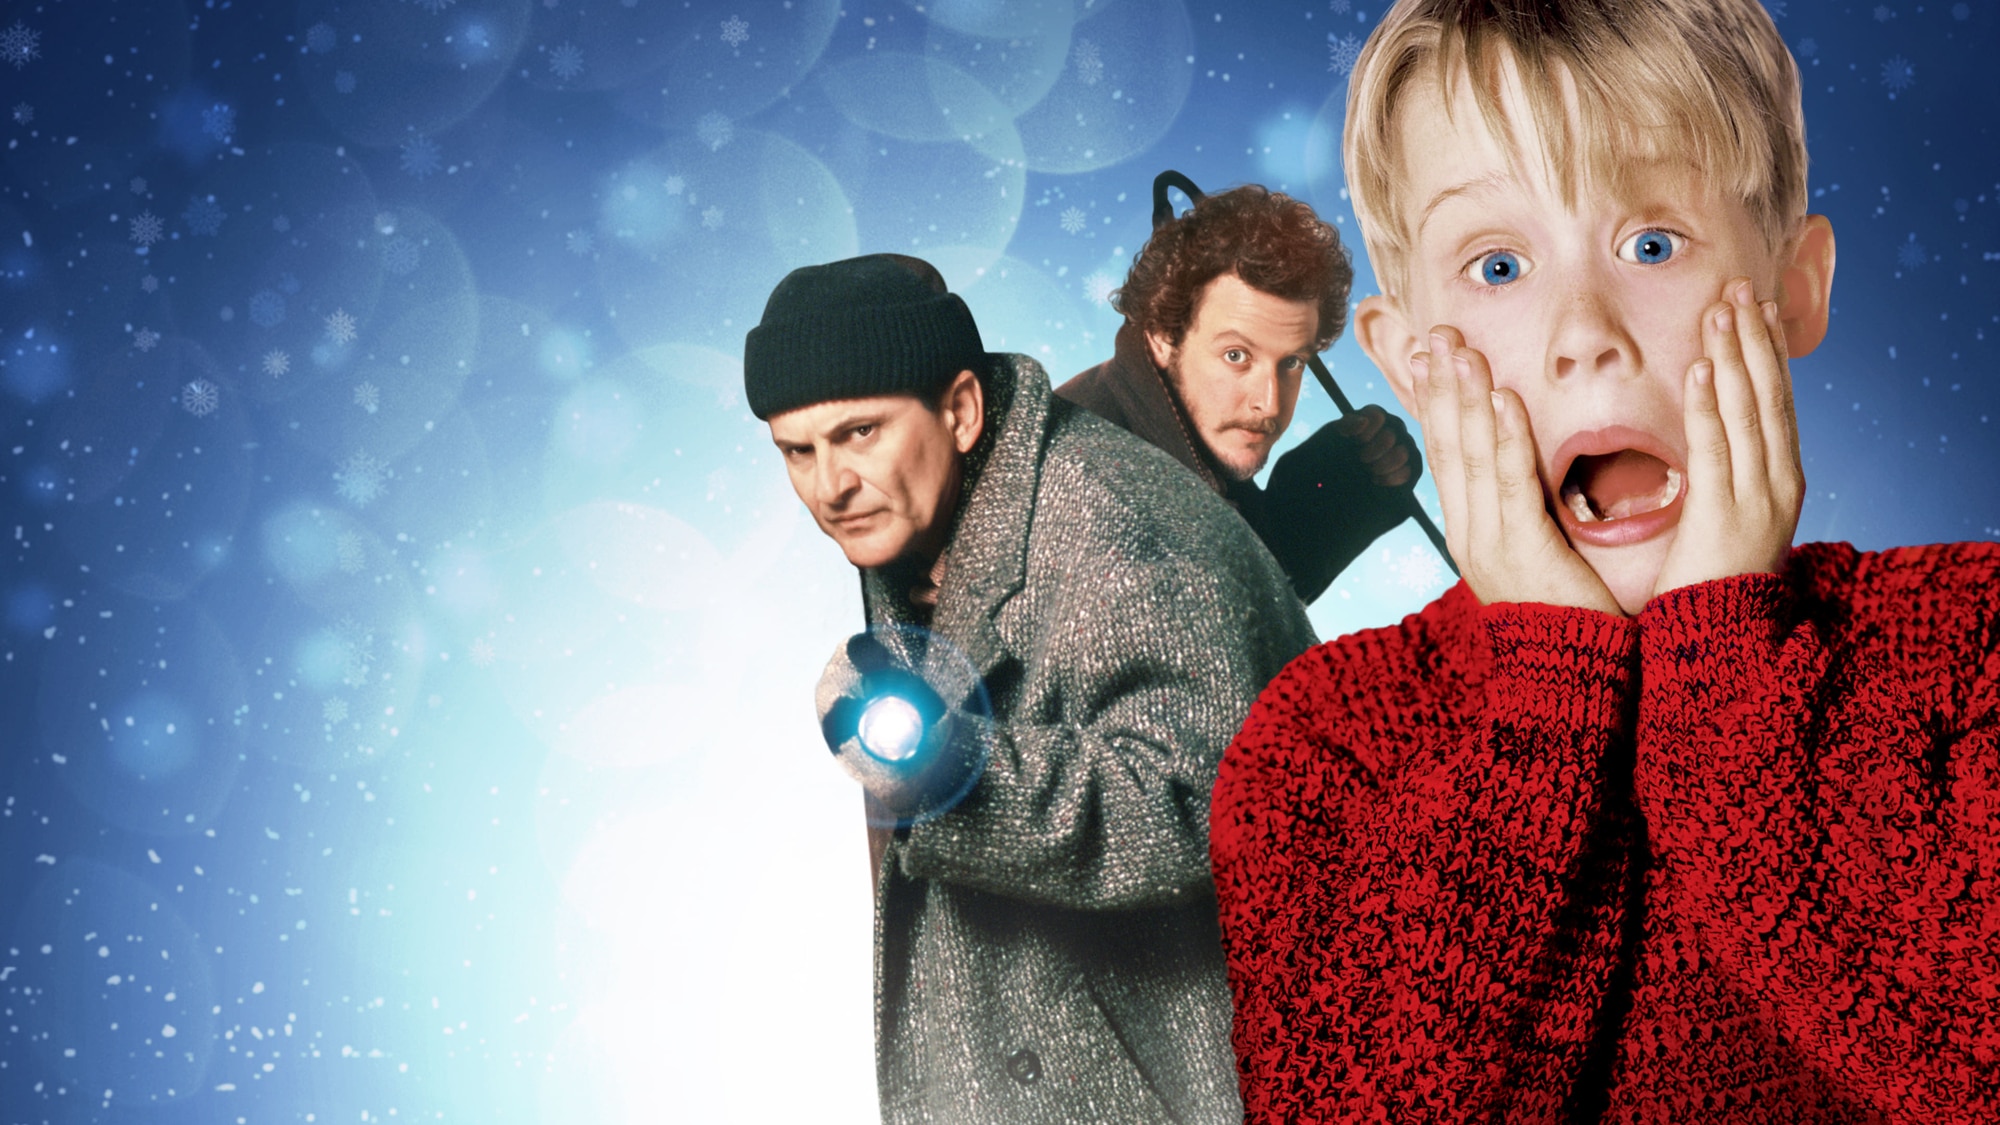 psicologiasdobrasil.com.br - A magia do Natal em 10 filmes perfeitos para ver em família